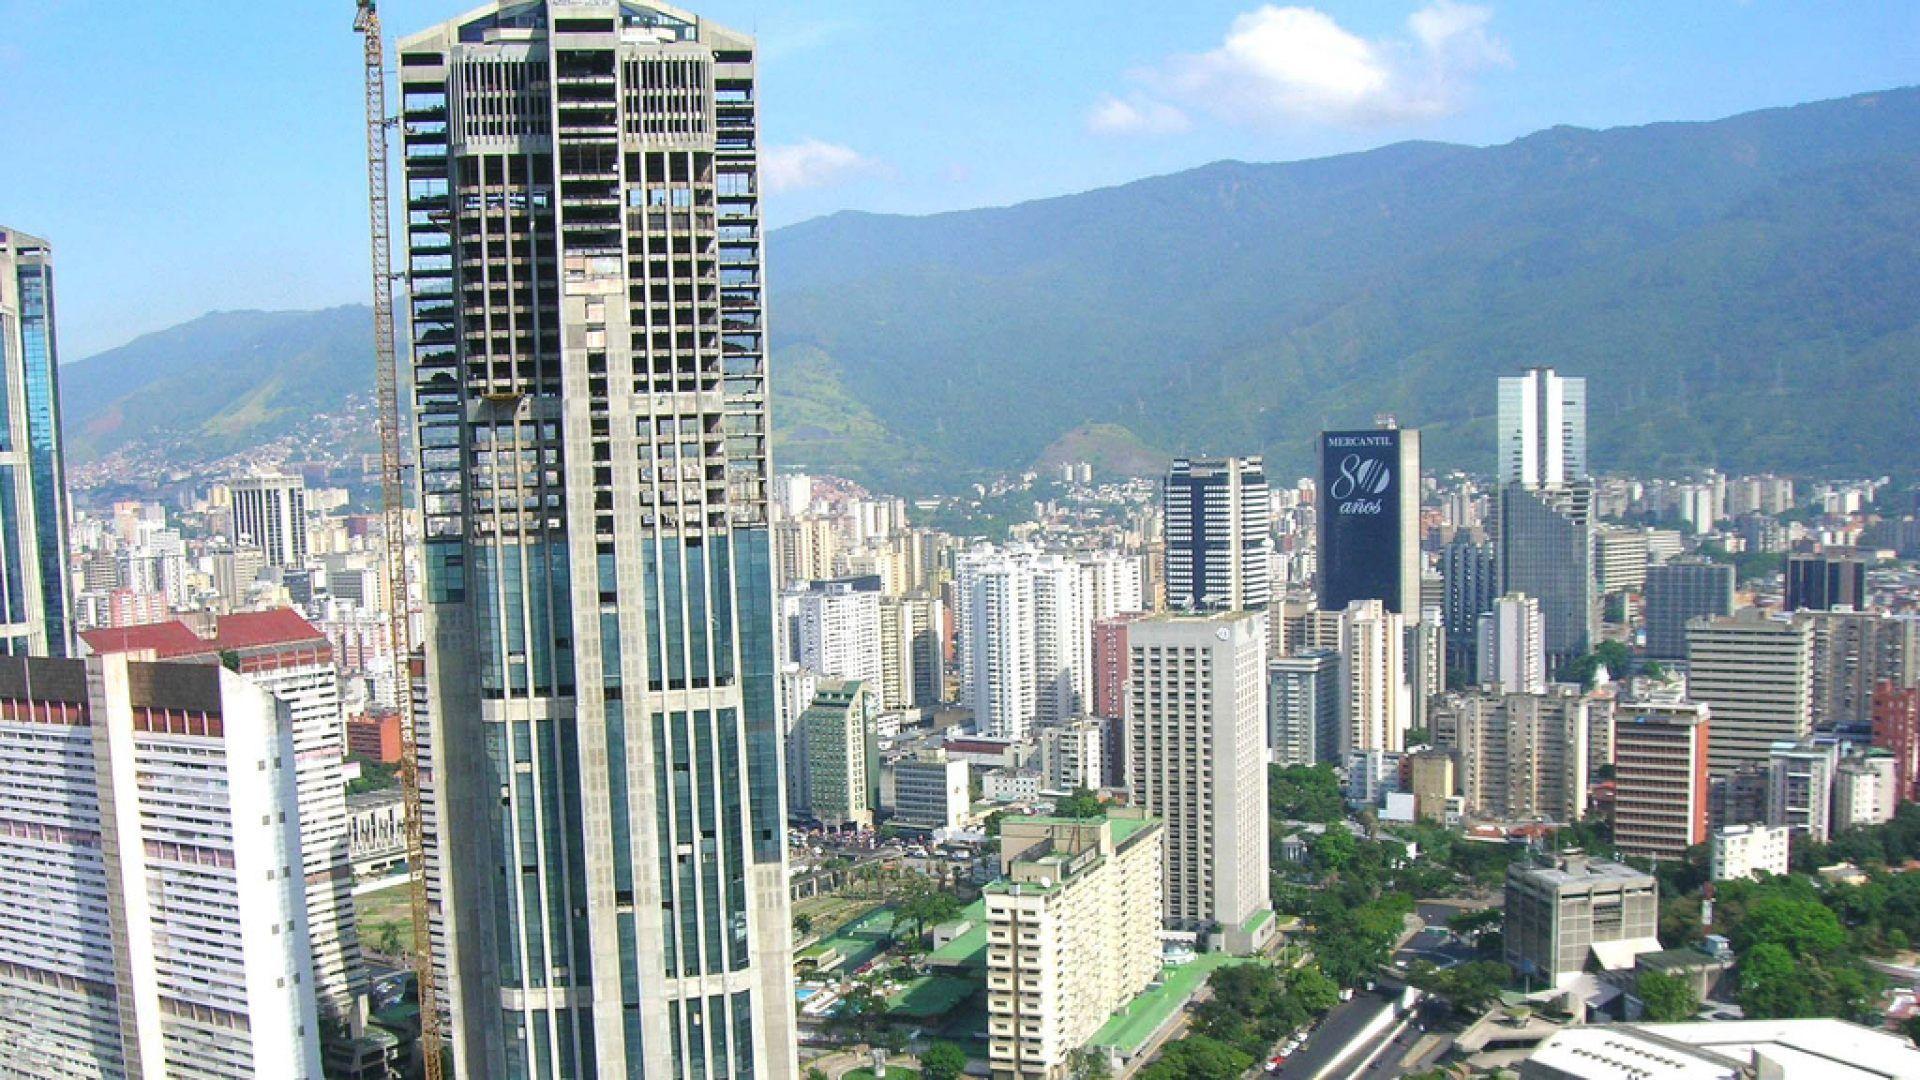 Caracas desde el cielo - Fondos de pantalla y wallpaper